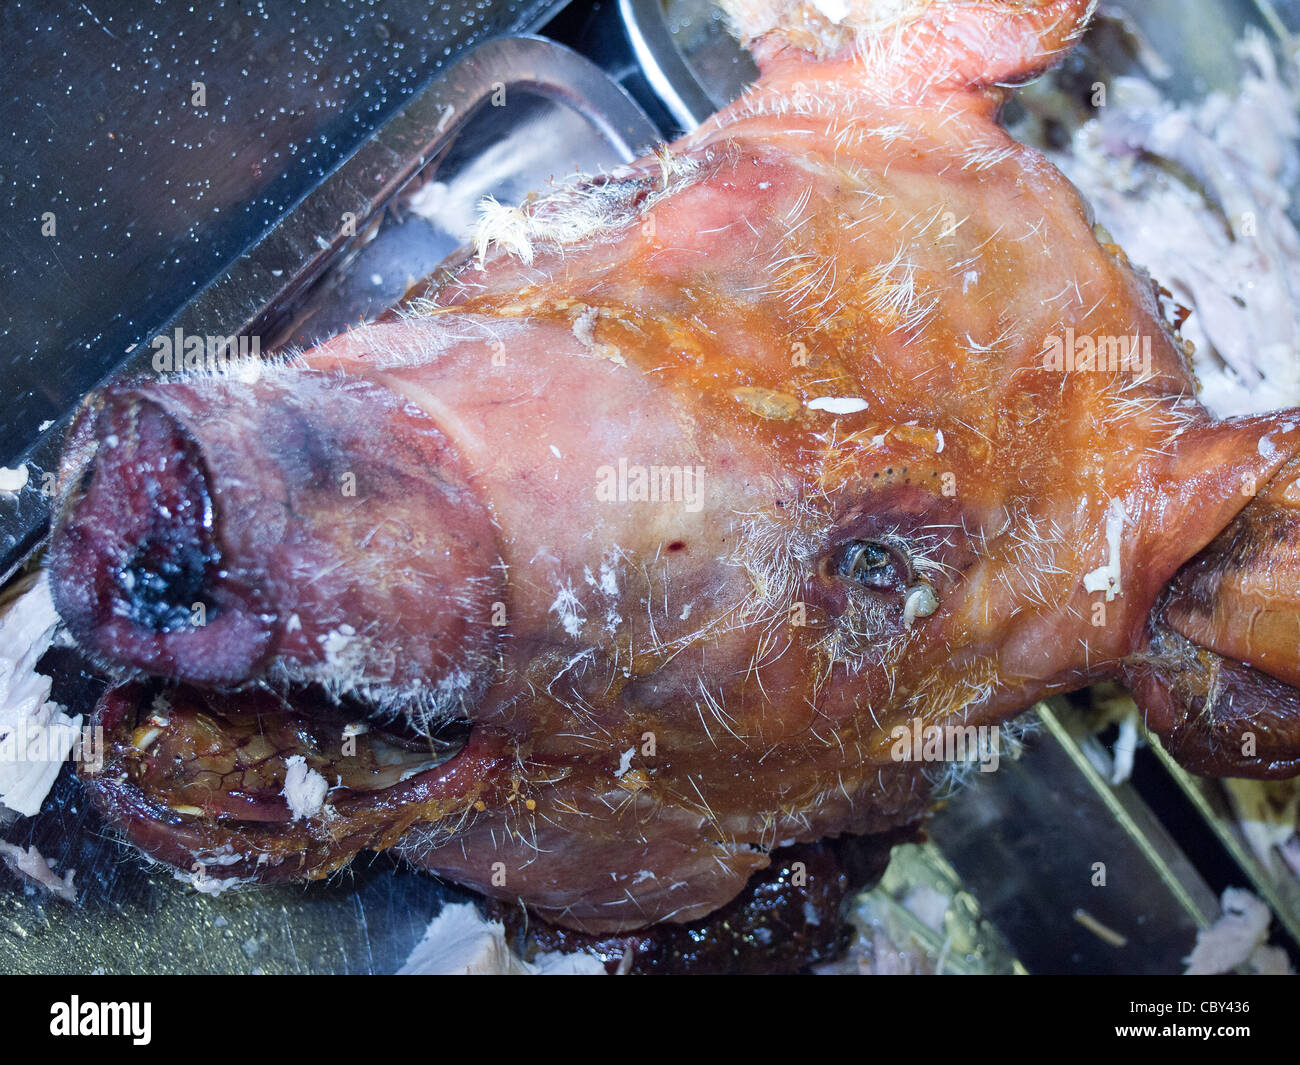 La horrible visión de una cabeza de cerdo en un cerdo asado. Foto de stock